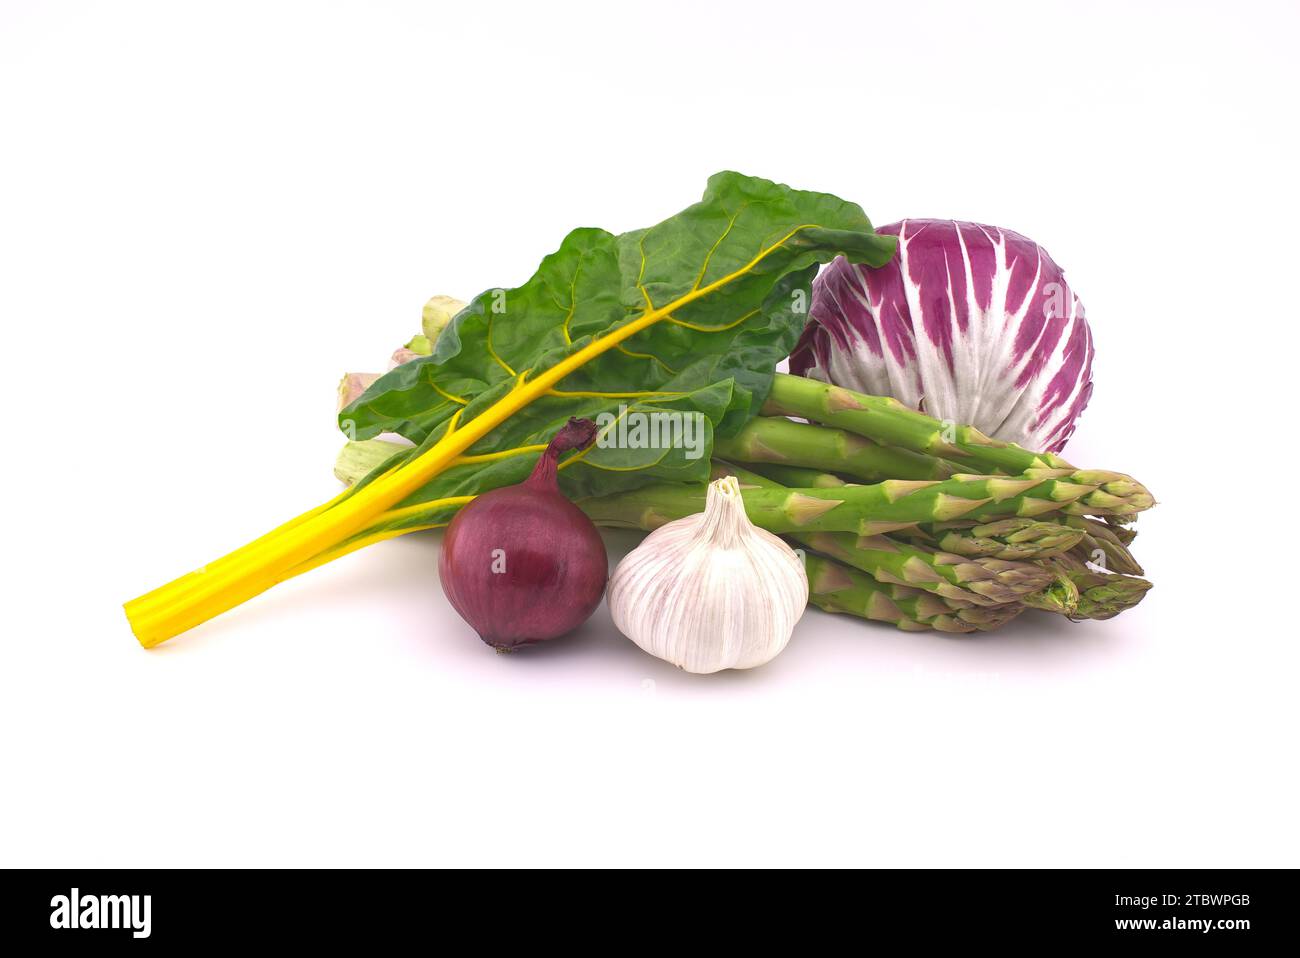 Assortiment de betteraves fraîches colorées, dont des feuilles de betterave, des asperges, de la salade radicchio, de l'oignon et de l'ail isolés sur fond blanc Banque D'Images